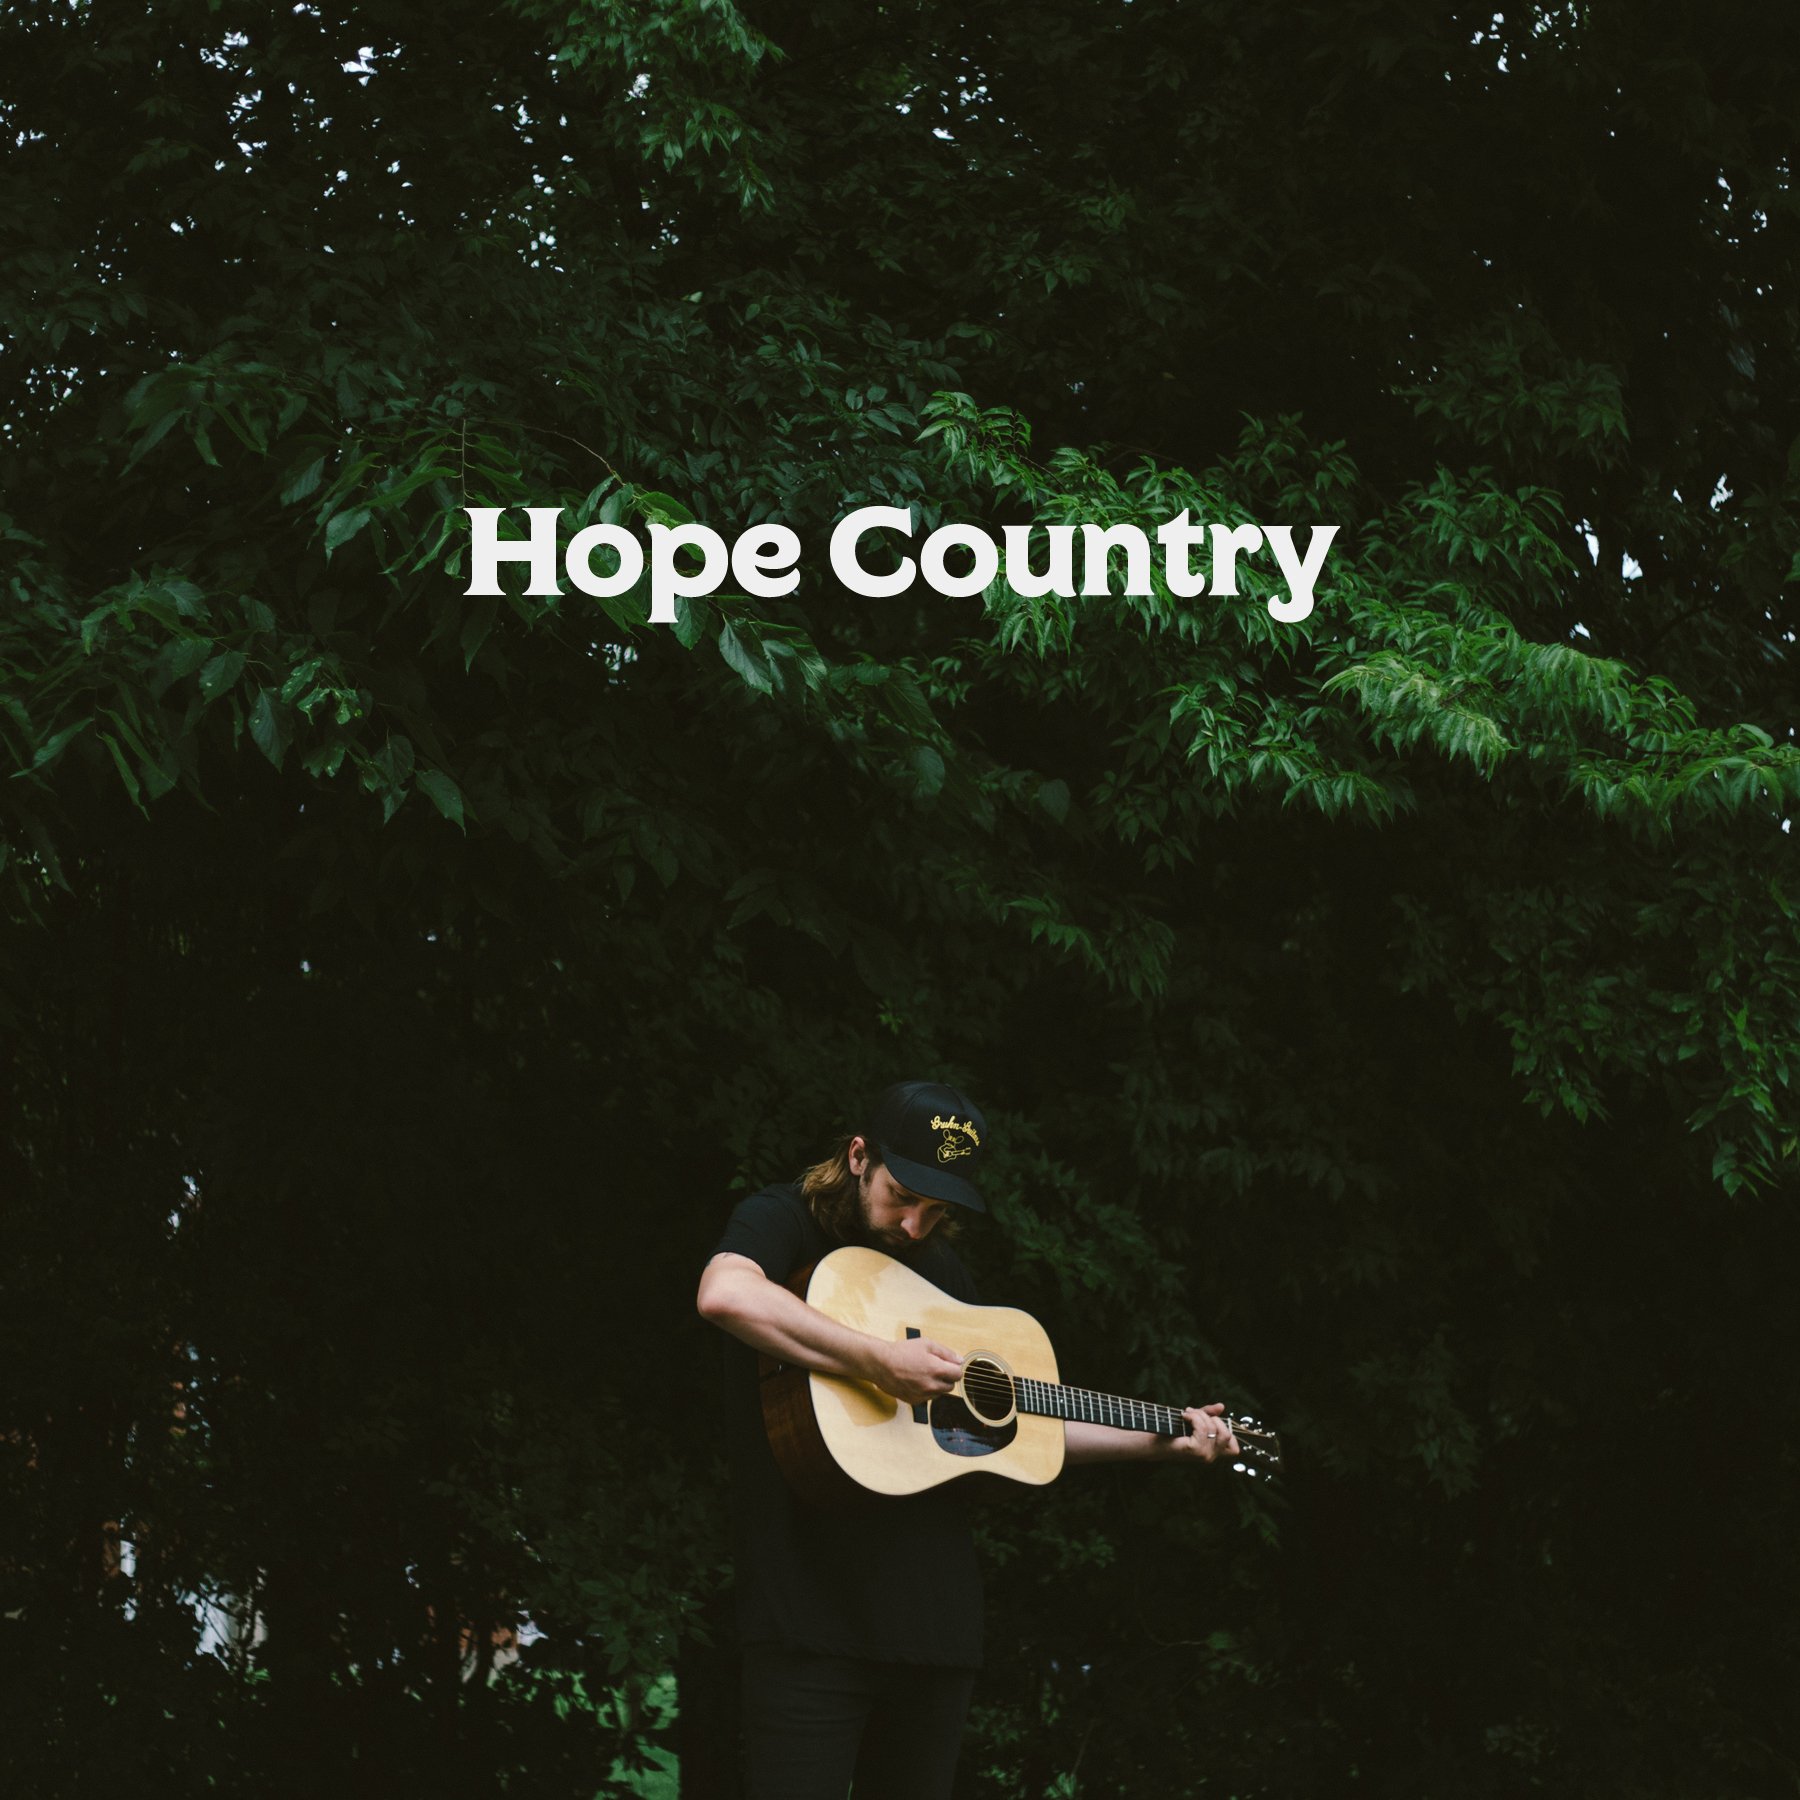 Музыка слушай страна. Hope Country. The hope Country обои. Help Страна hope кампания.